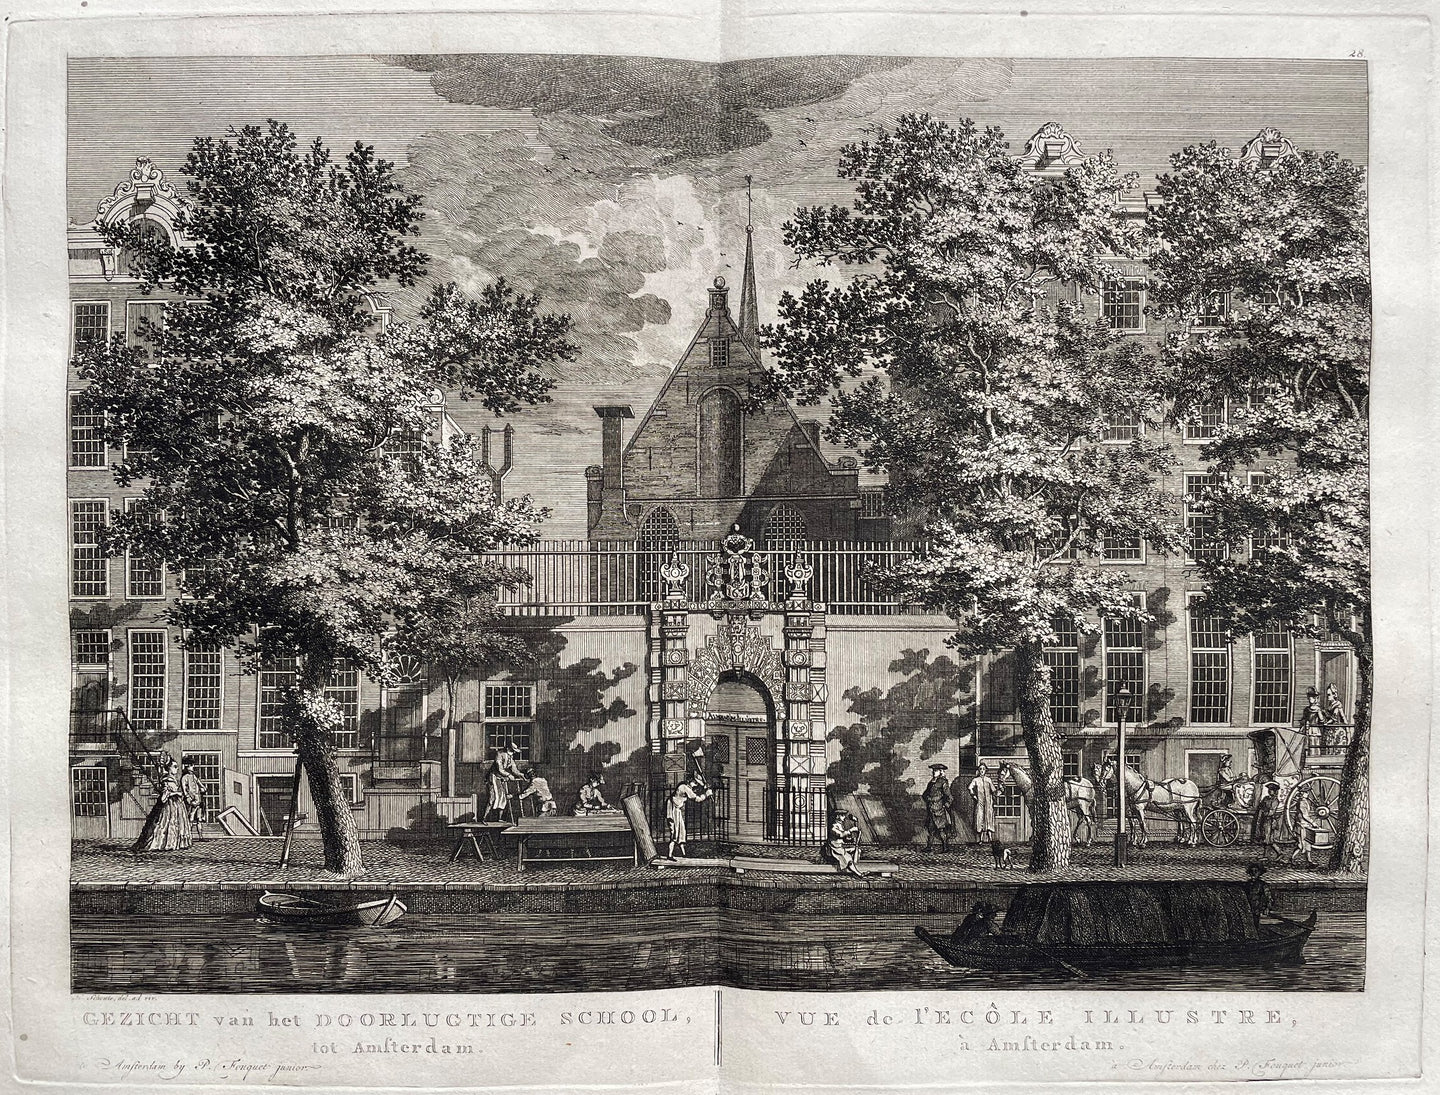 Amsterdam Doorluchtige School Agnietenkapel - P Fouquet - 1783